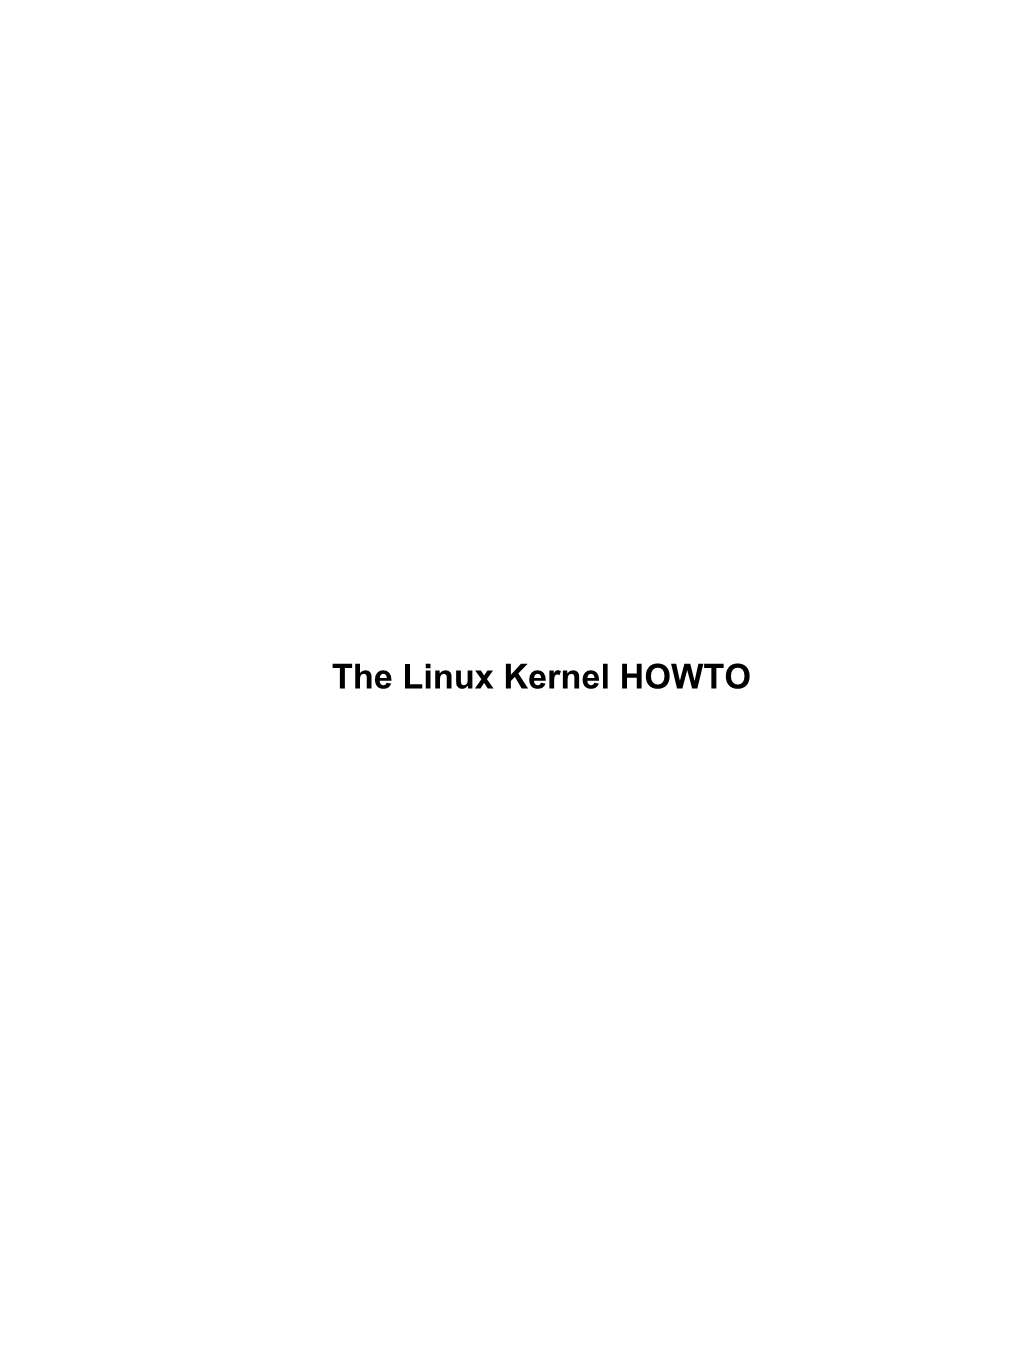 The Linux Kernel HOWTO the Linux Kernel HOWTO